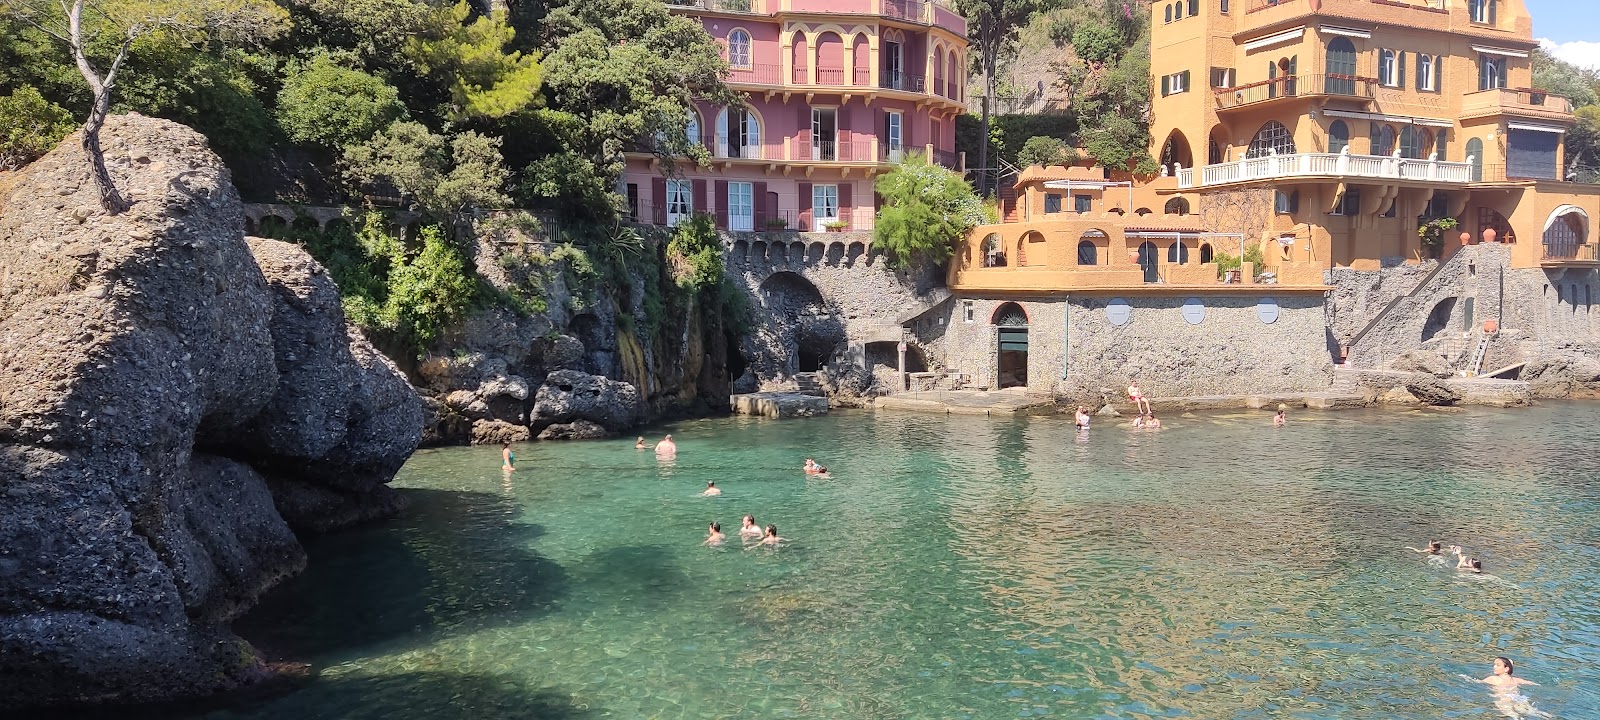 Photo of Baia Cannone Portofino with tiny bay